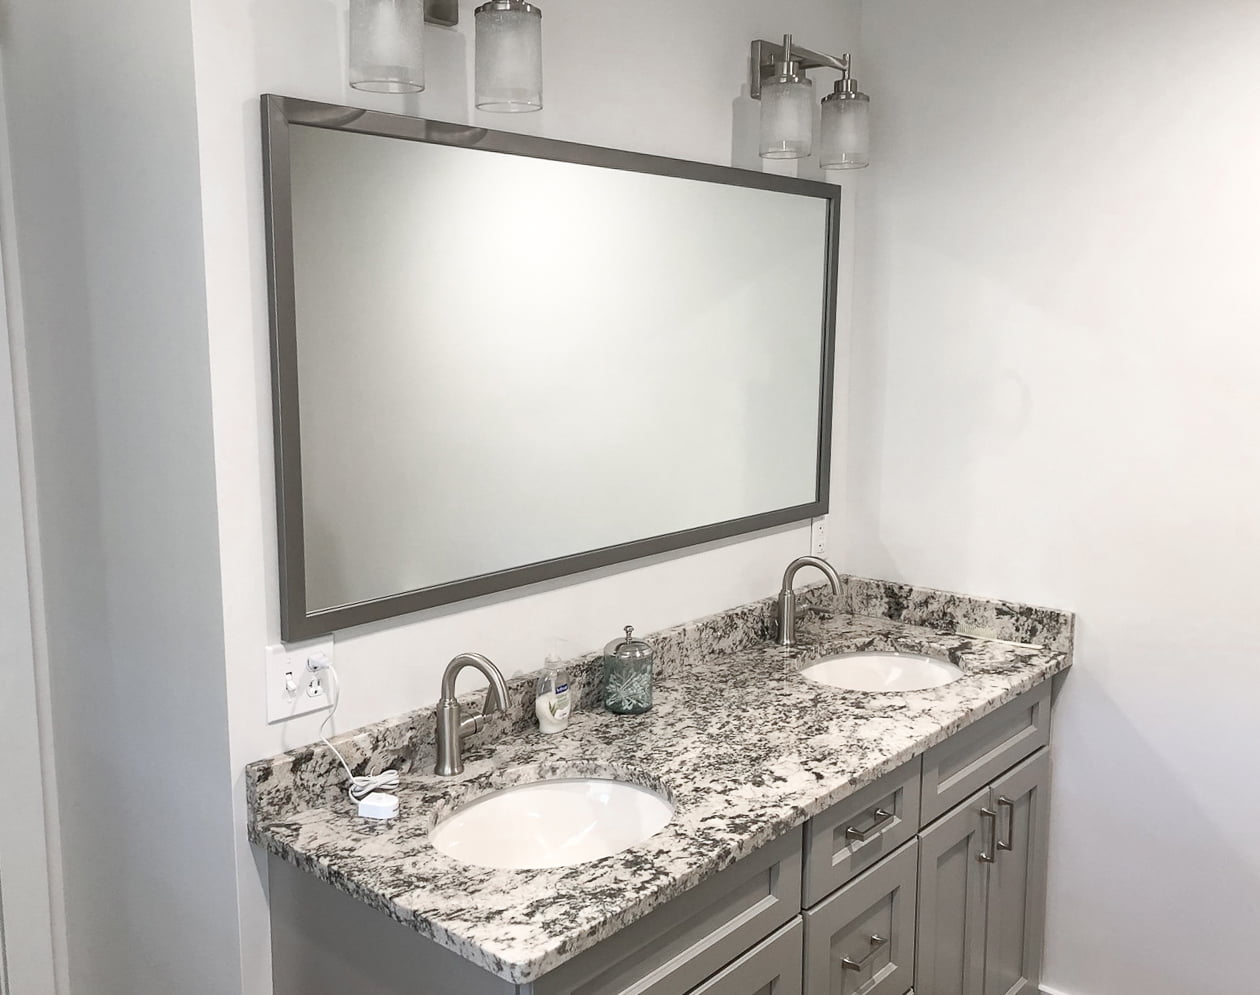 Ellis Framed Wall Mirror Satin Nickel, Silver Framed Bathroom Vanity Mirror